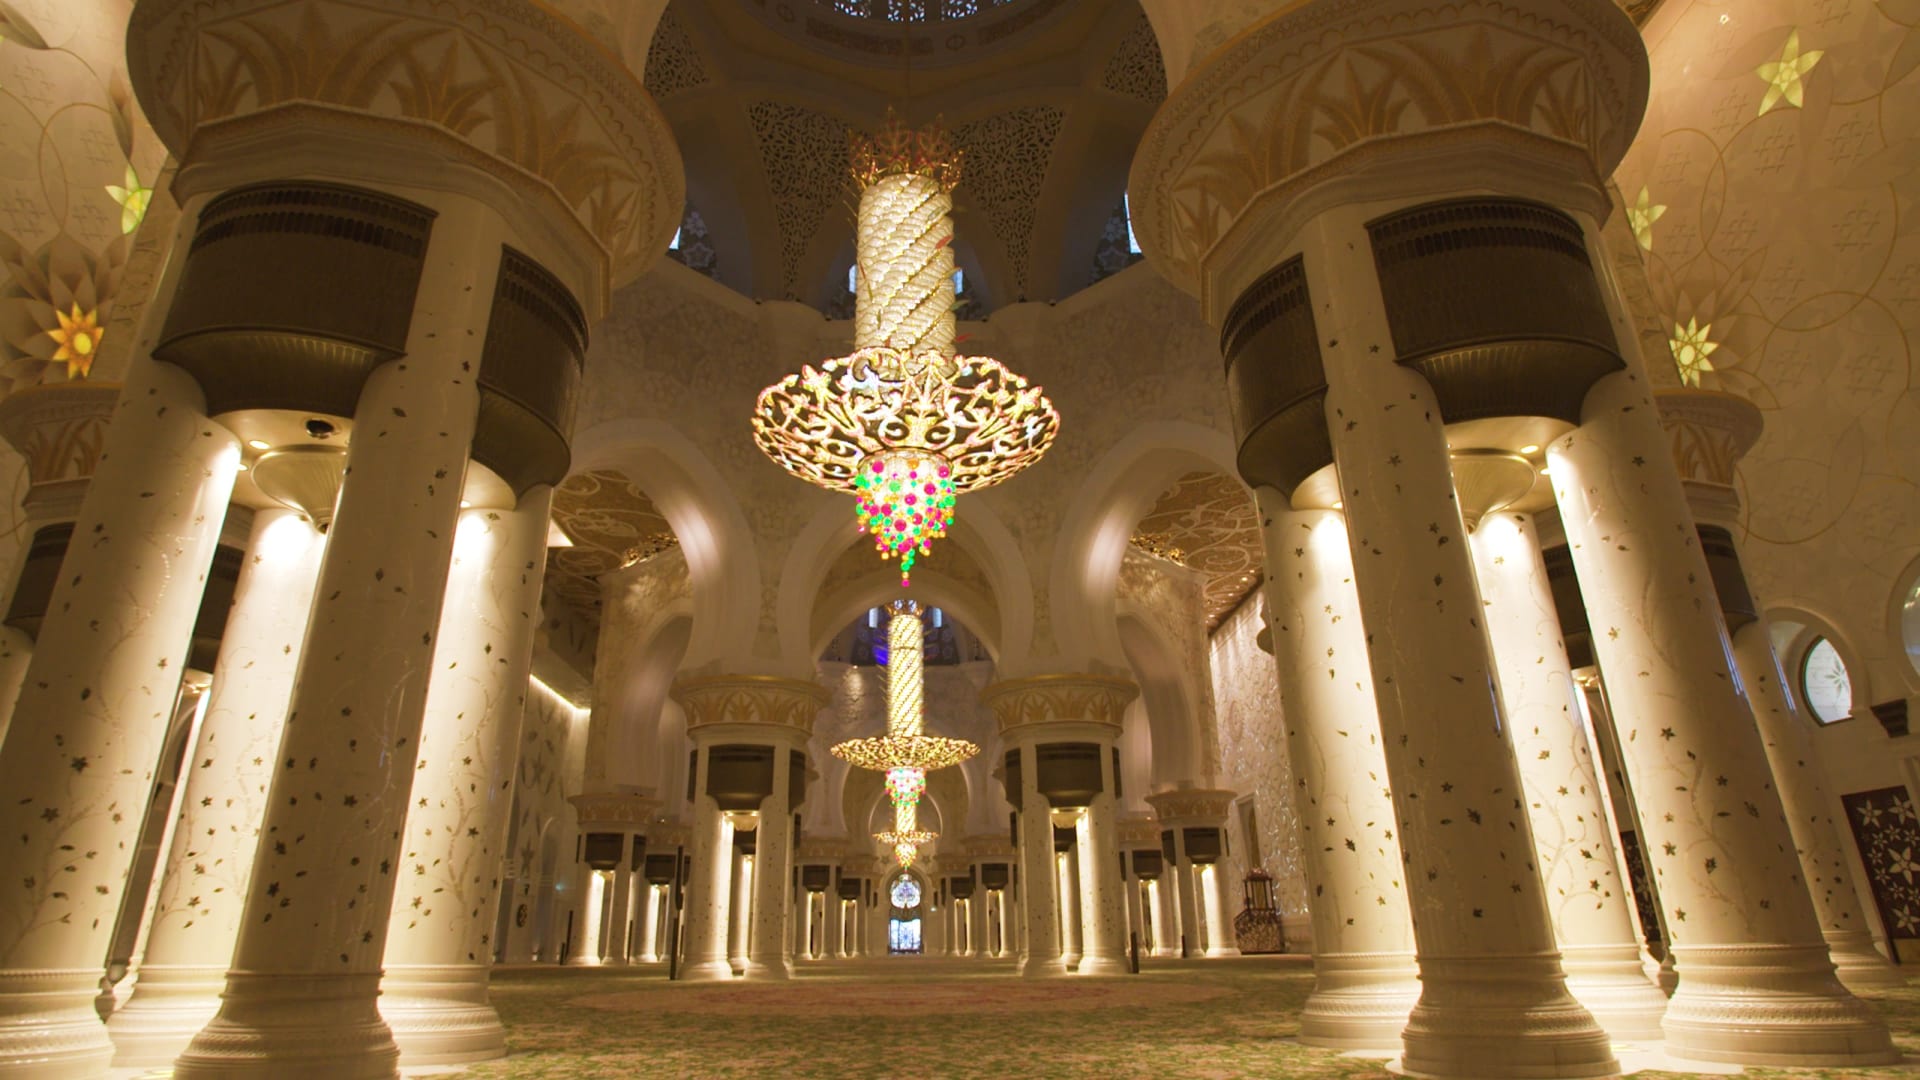 من الأيدي الخفية التي تعمل على ترميم أكبر سجادة في العالم بجامع الشيخ زايد في أبوظبي؟